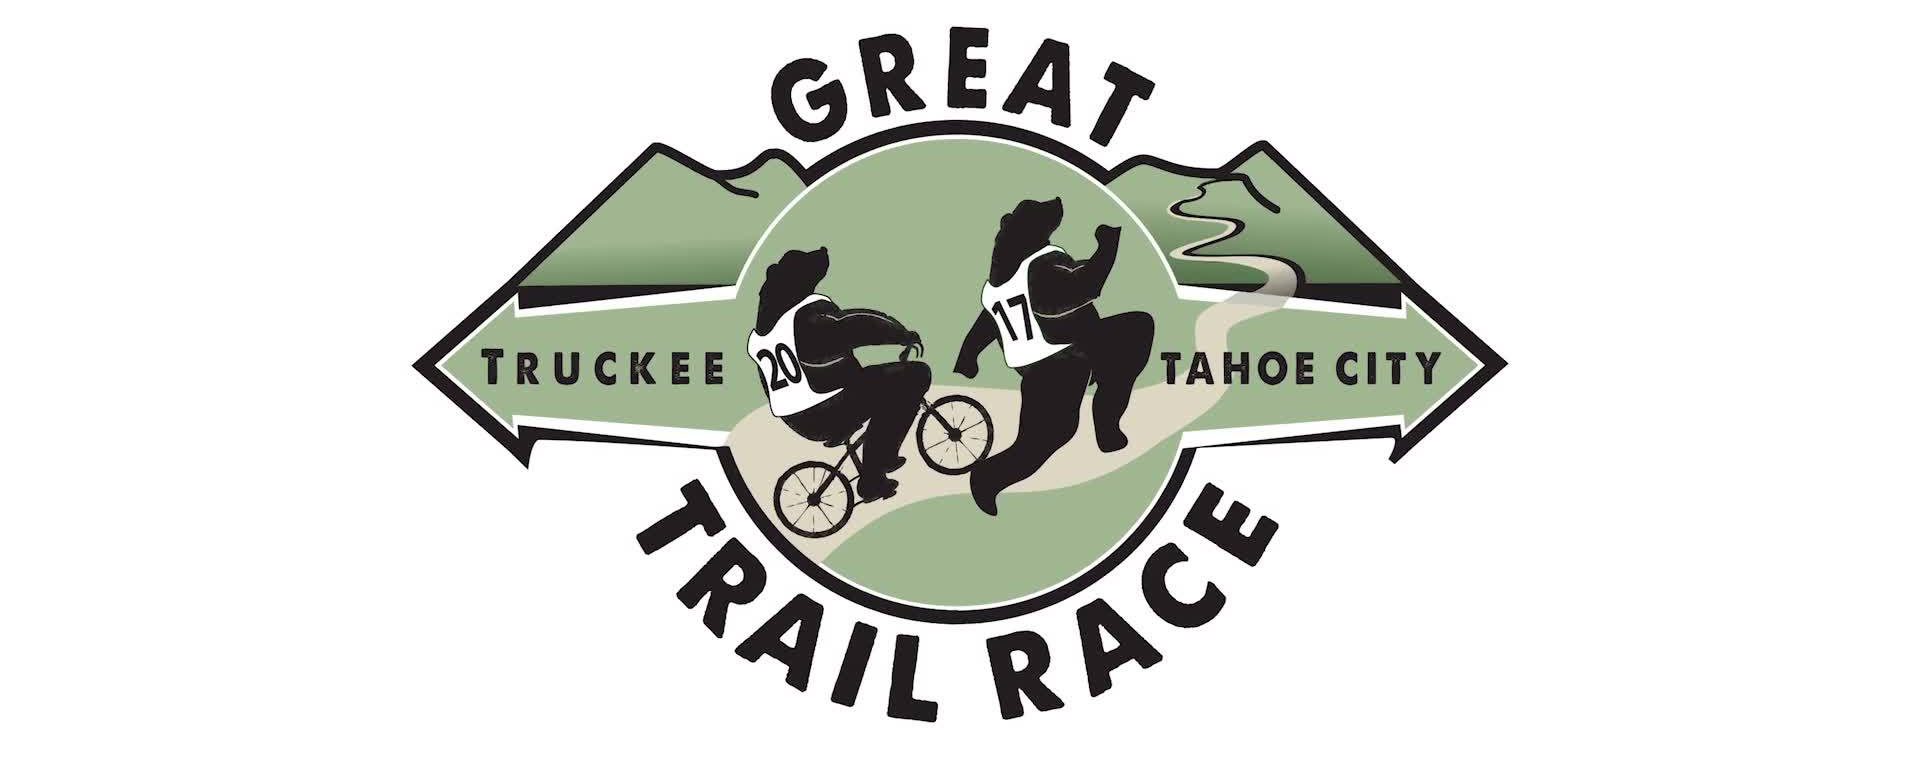 Great Trail Race